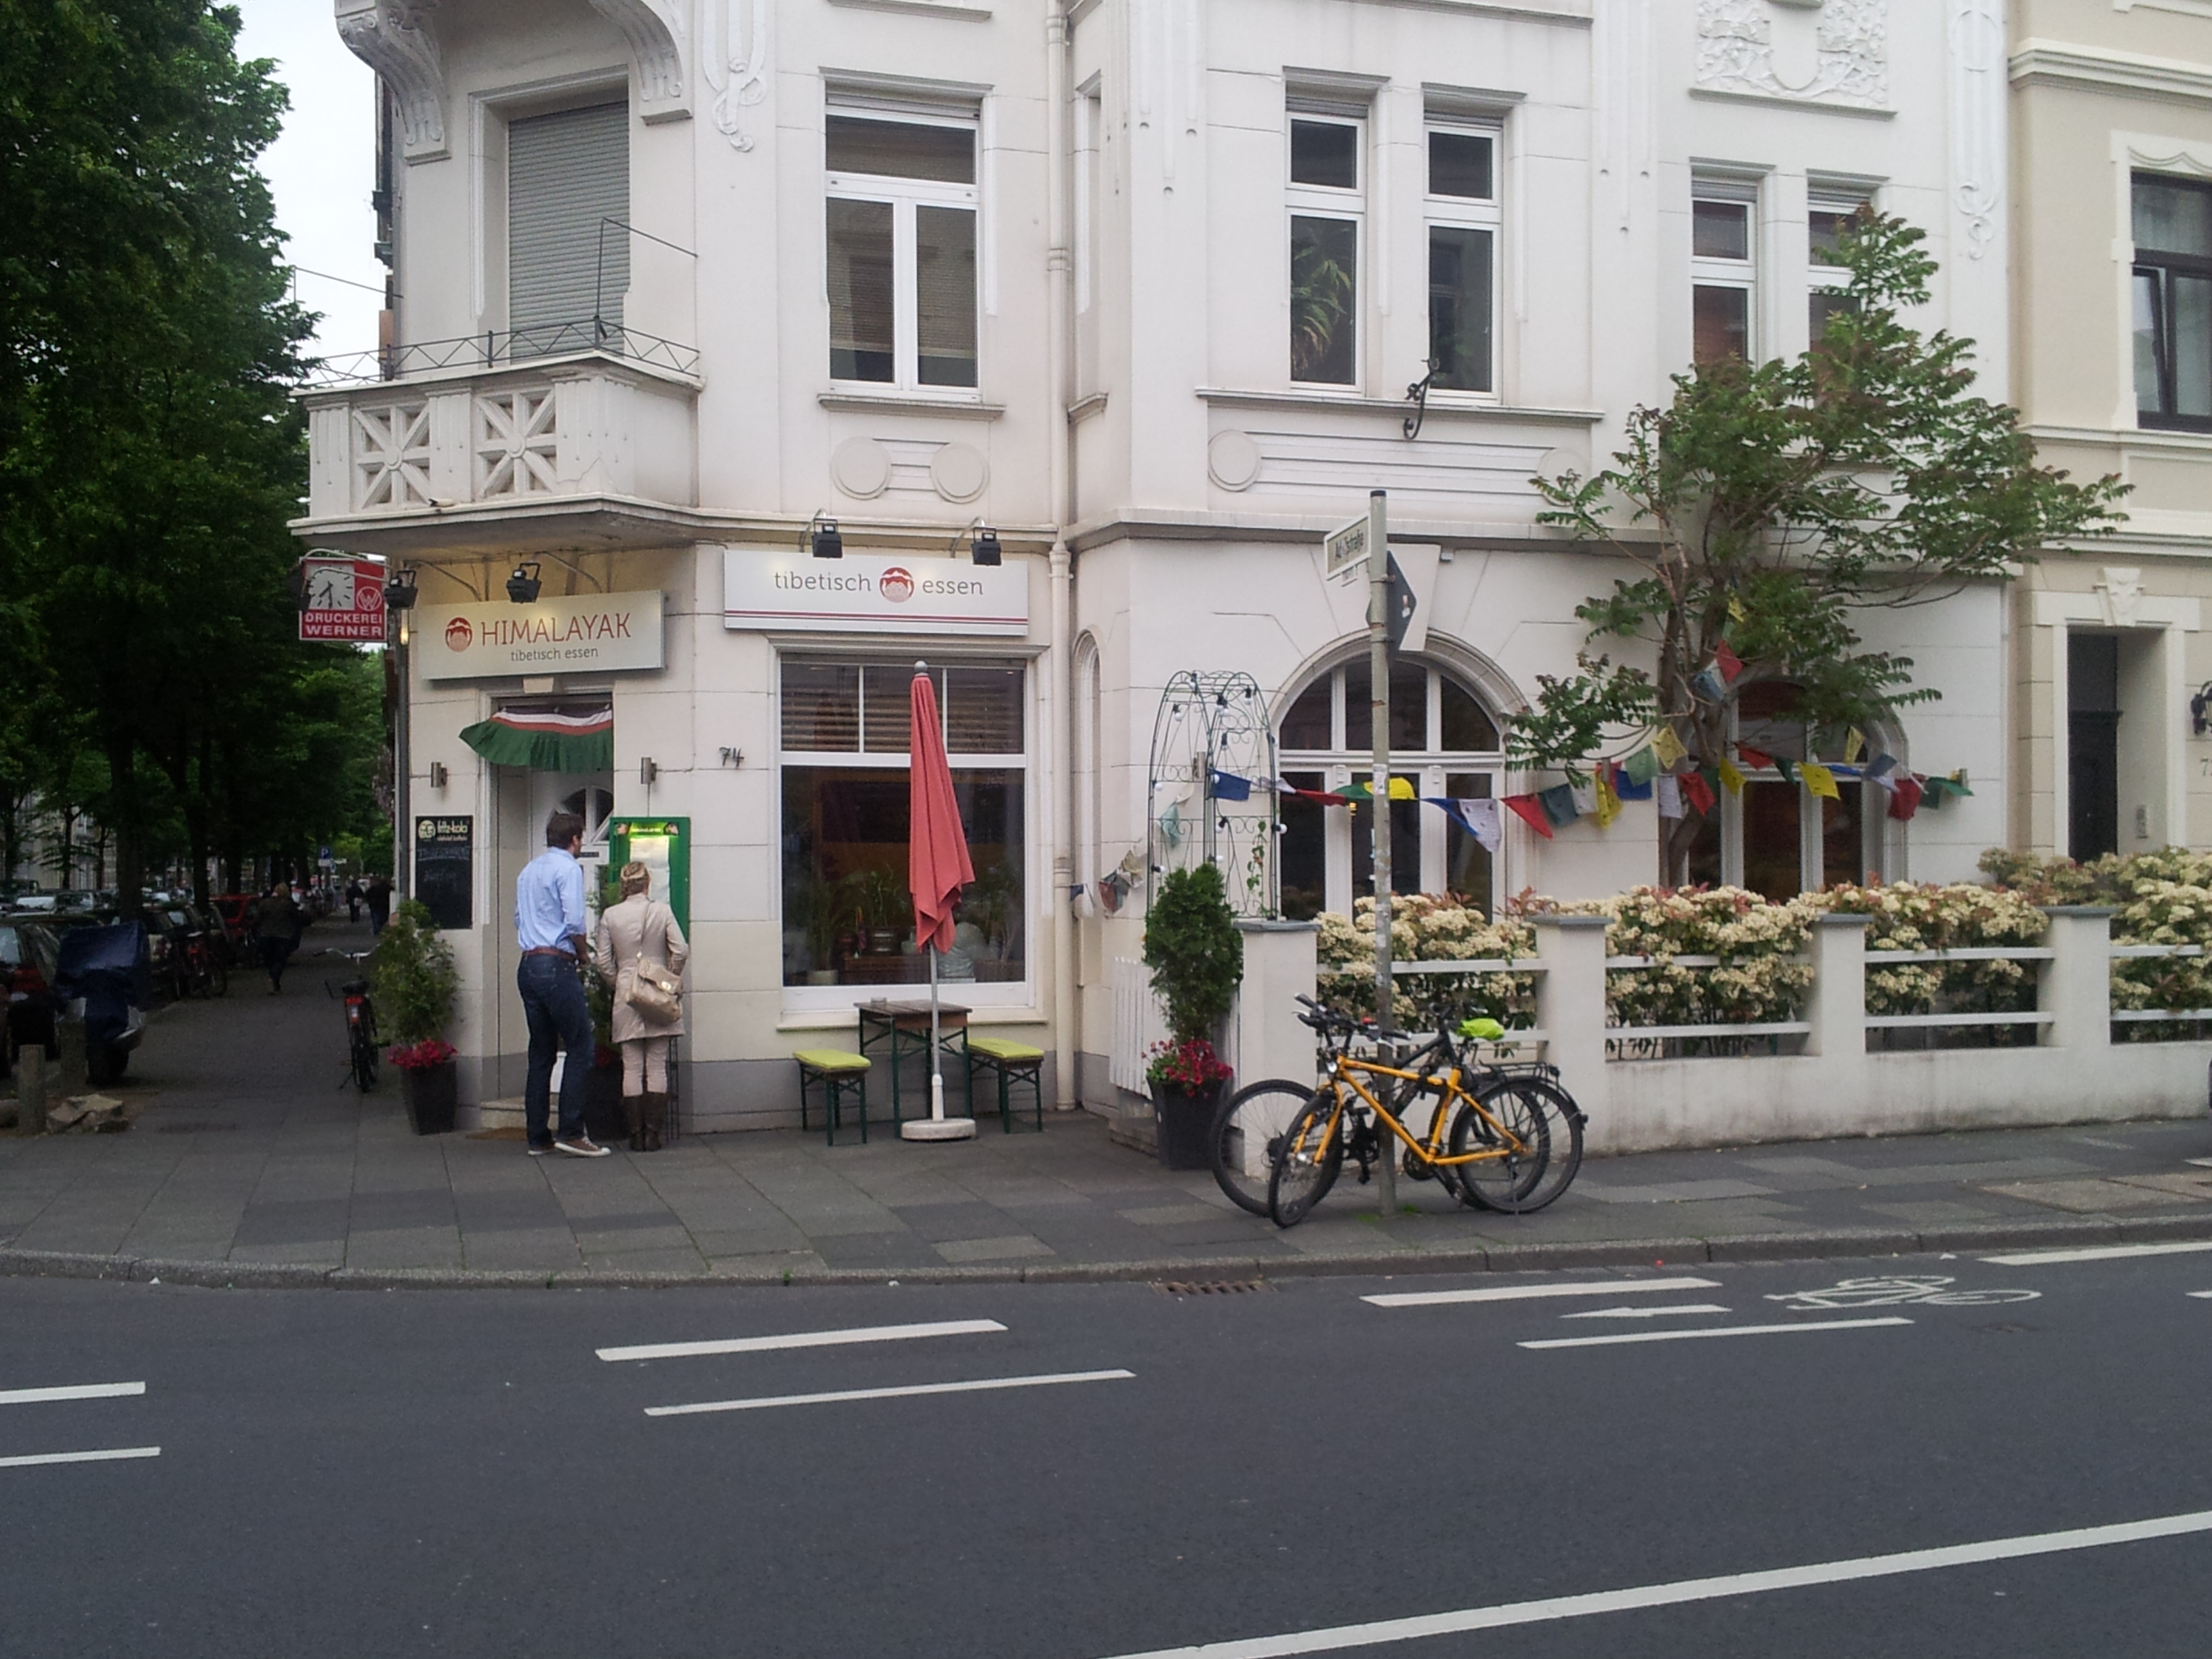 Bild 13 Jimba Sangmo Restaurant Himalayak in Bonn